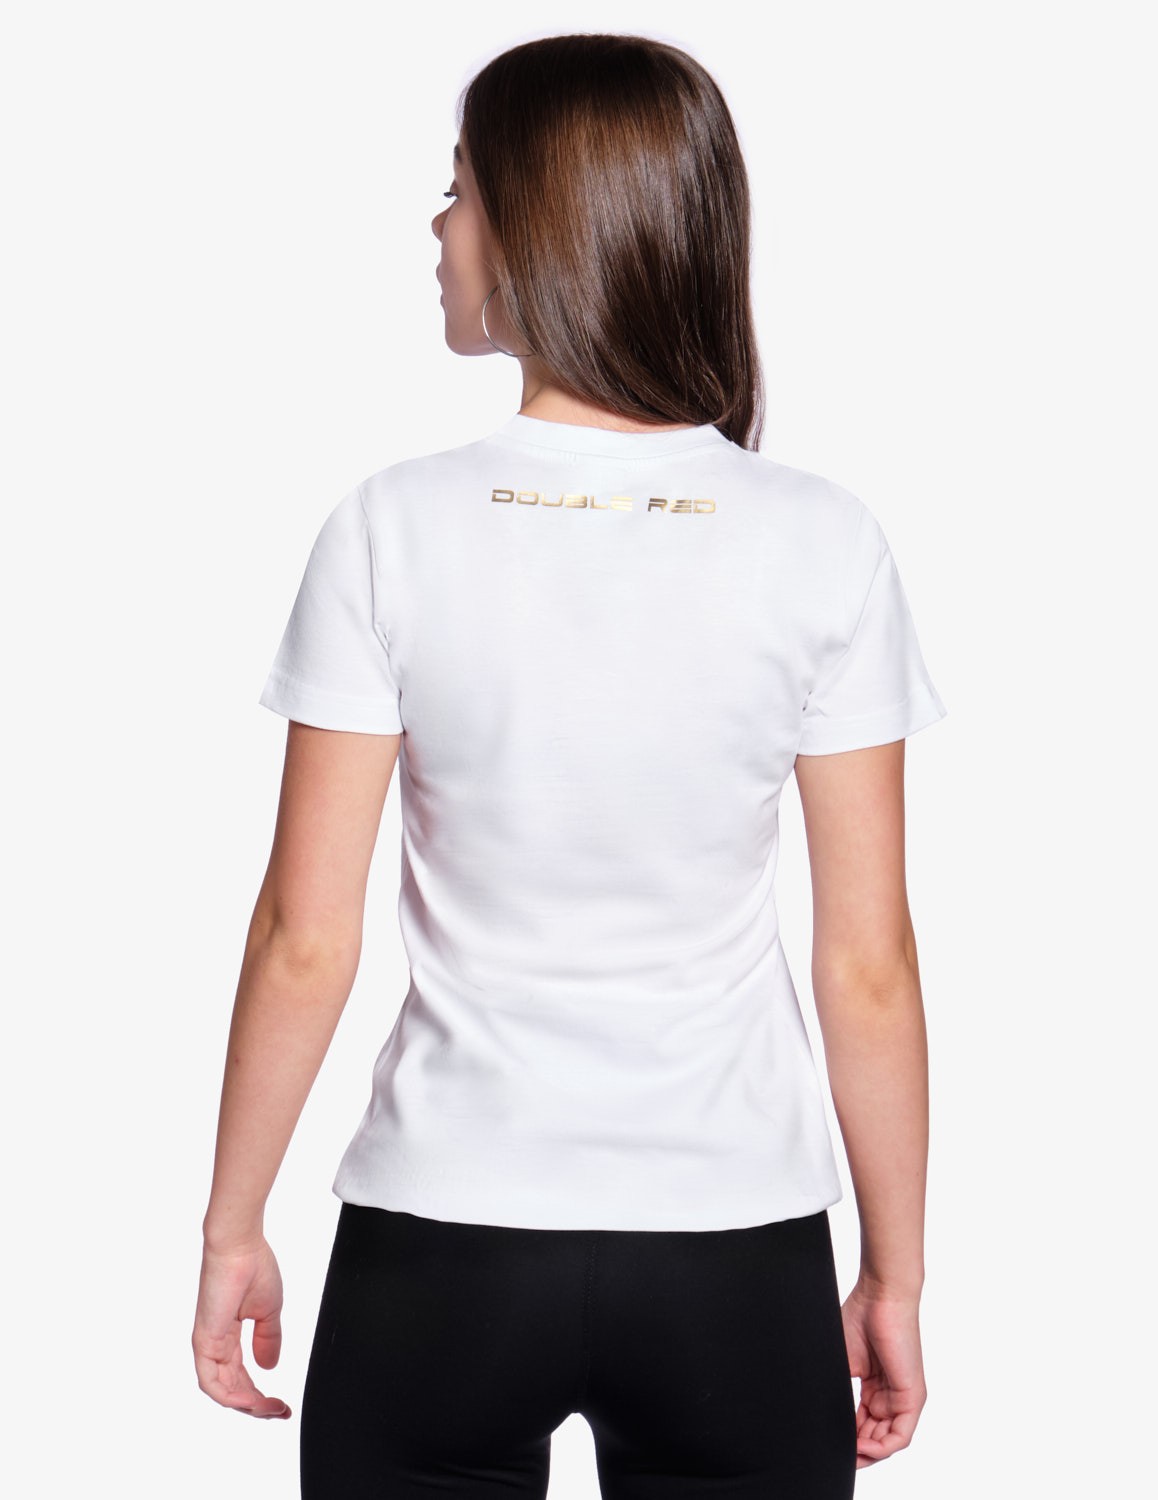 CARBONARO™ T-shirt GOLD FOREVER™ White